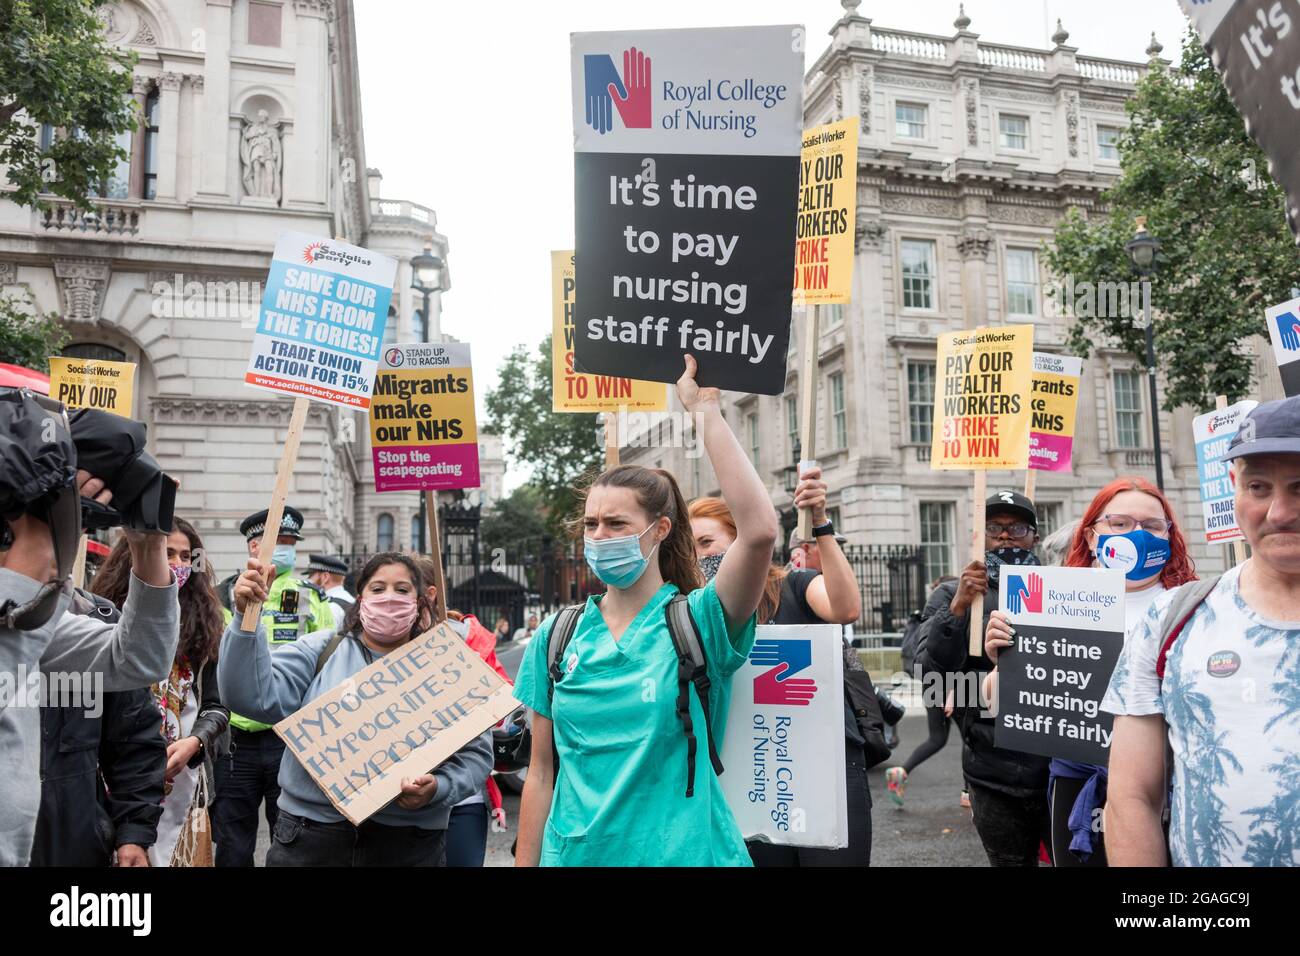 Während einer Demonstration vor der Downing Street marschieren die Demonstranten mit Plakaten.Mitglieder des Nationalen Gesundheitsdienstes (NHS) versammelten sich vor dem St. Thomas' Hospital, bevor sie in einer Demonstration in Richtung Downing Street marschierten, um eine faire Bezahlung für die Beschäftigten des NHS zu fordern, da die revidierte Gehaltserhöhung um 3 % von der Regierung als kaum zufriedenstellend angesehen wurde. Zu den angesprochenen Themen gehörten lange Arbeitszeiten, Unterpersonal und der Mangel an geeigneten Schutzmaterialien für die Beschäftigten im Gesundheitswesen. Die Demonstration wurde von NHS Workers Say No angeführt, unterstützt von United the Union, GMB Union und dem Royal College of Nursing. (Foto von Bel Stockfoto